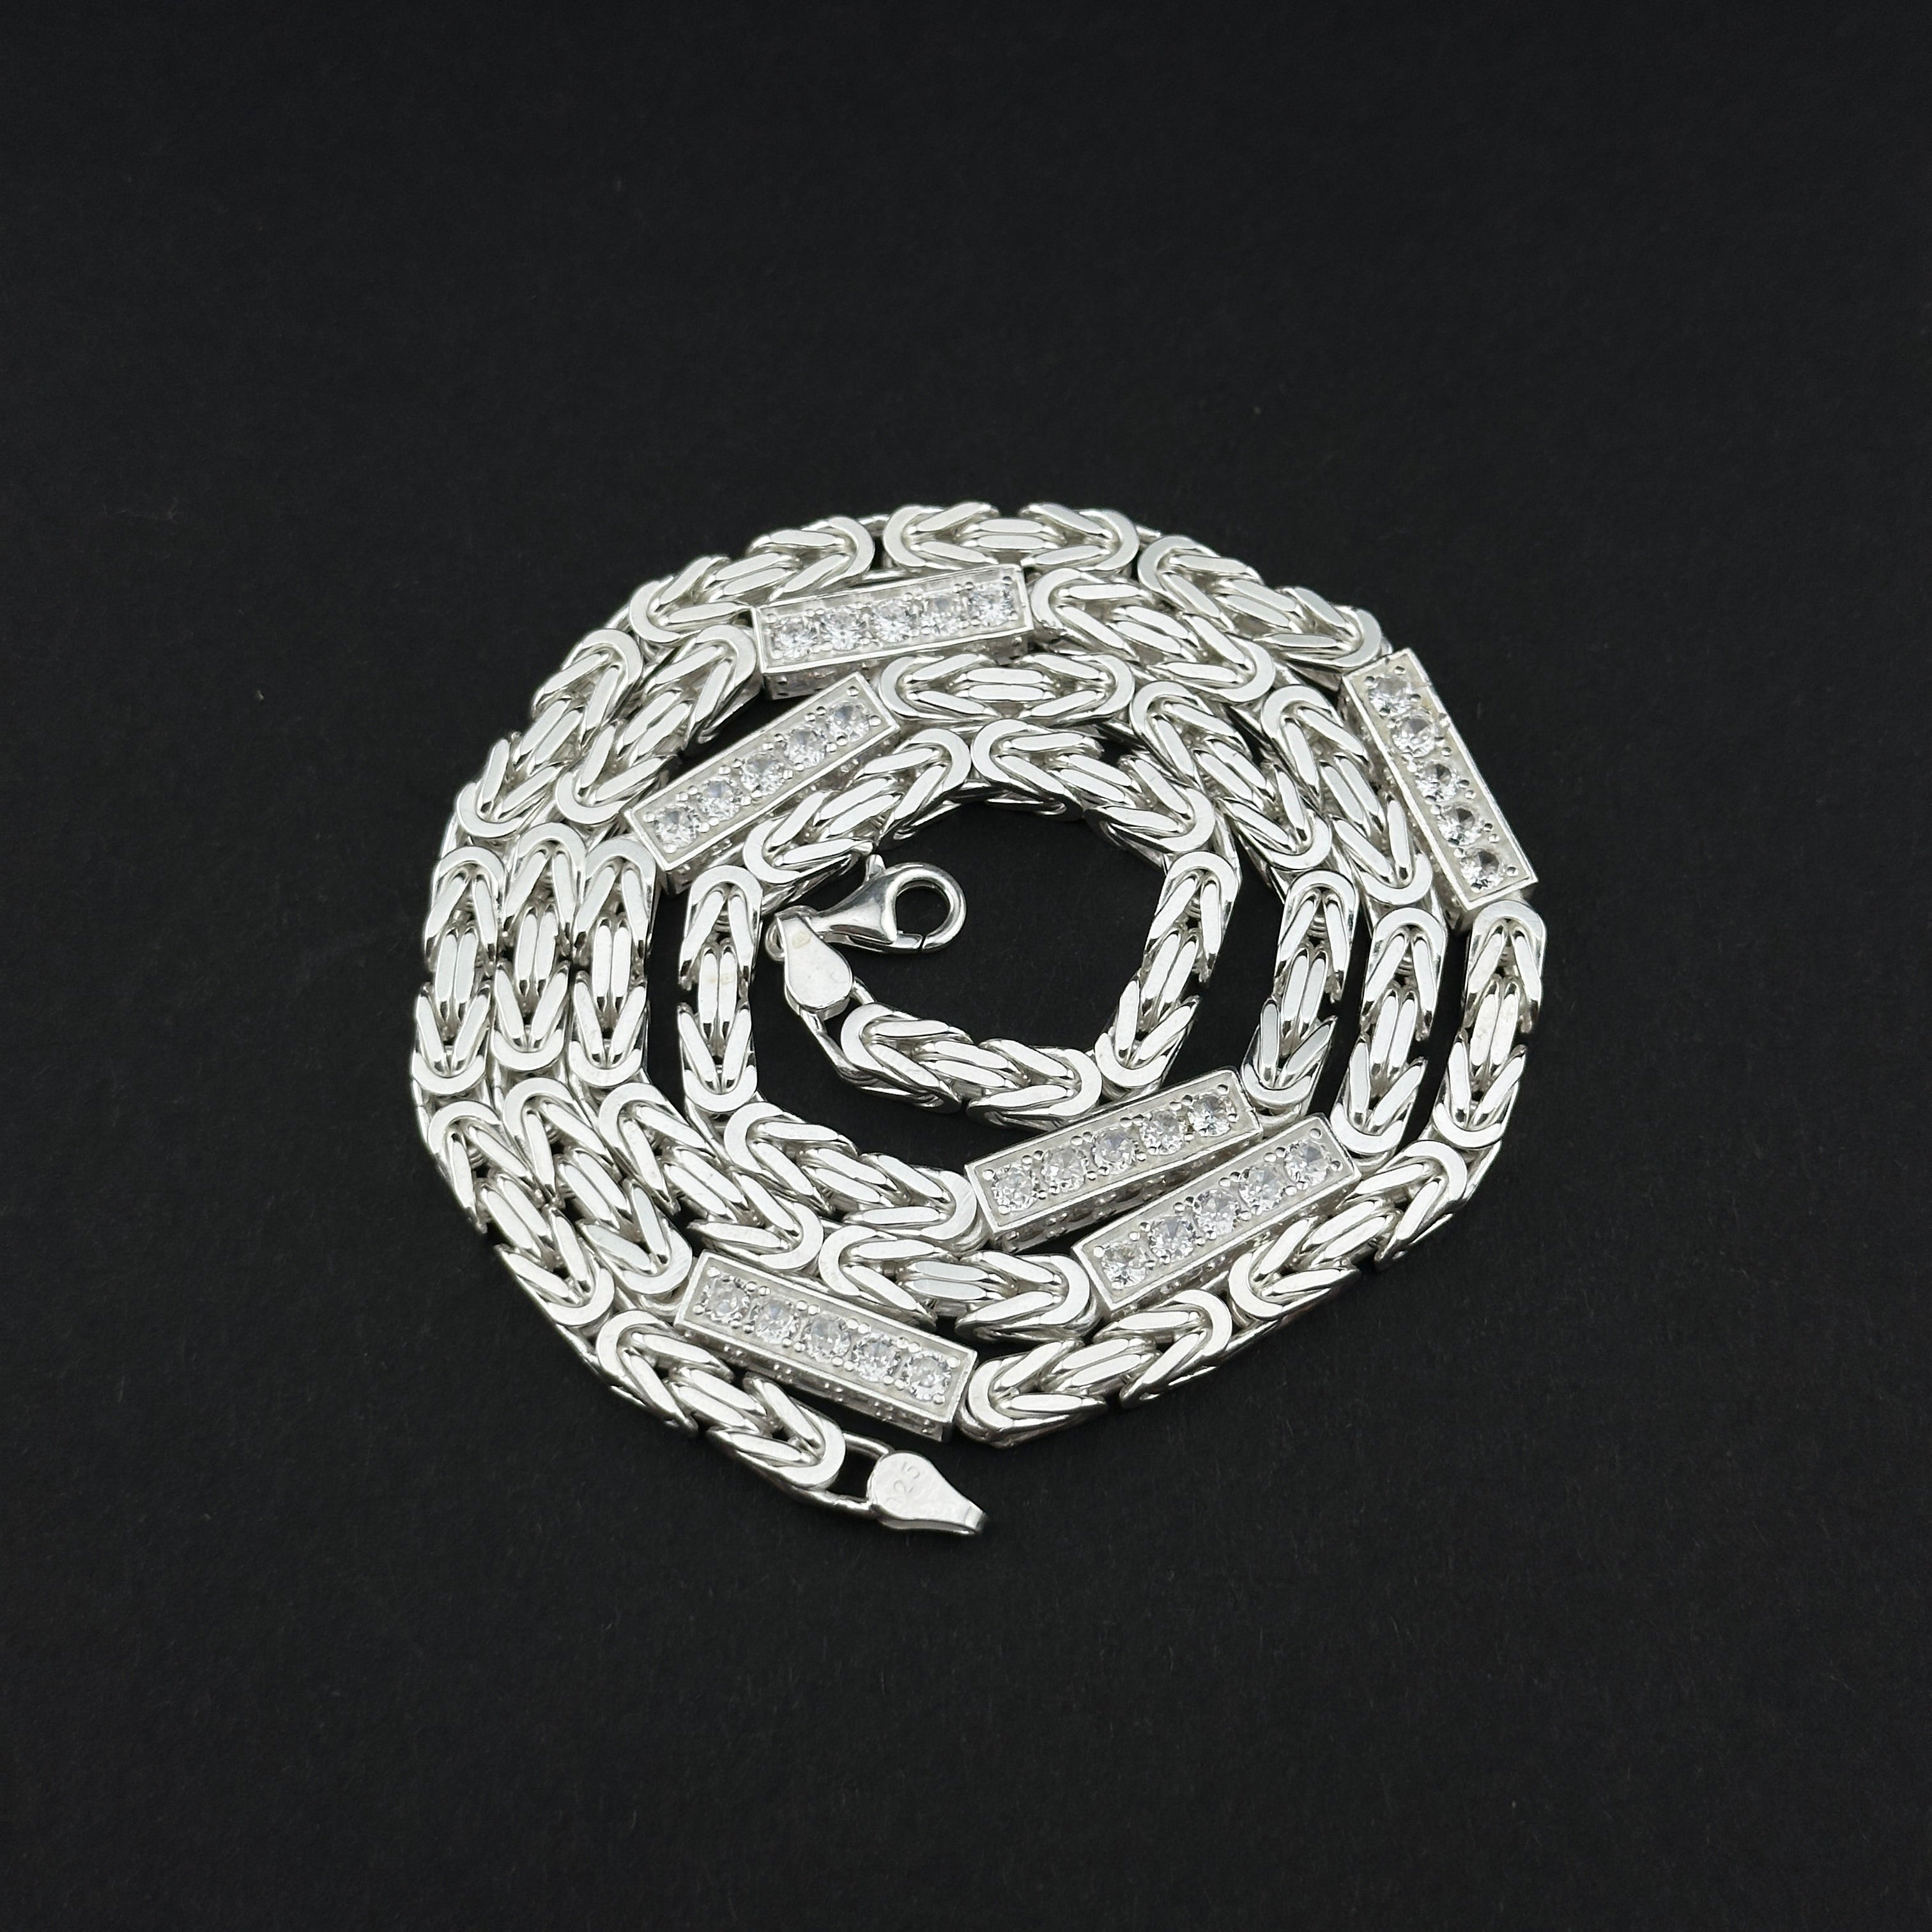 Königskette ICED out- 6mm breit - Silber 925